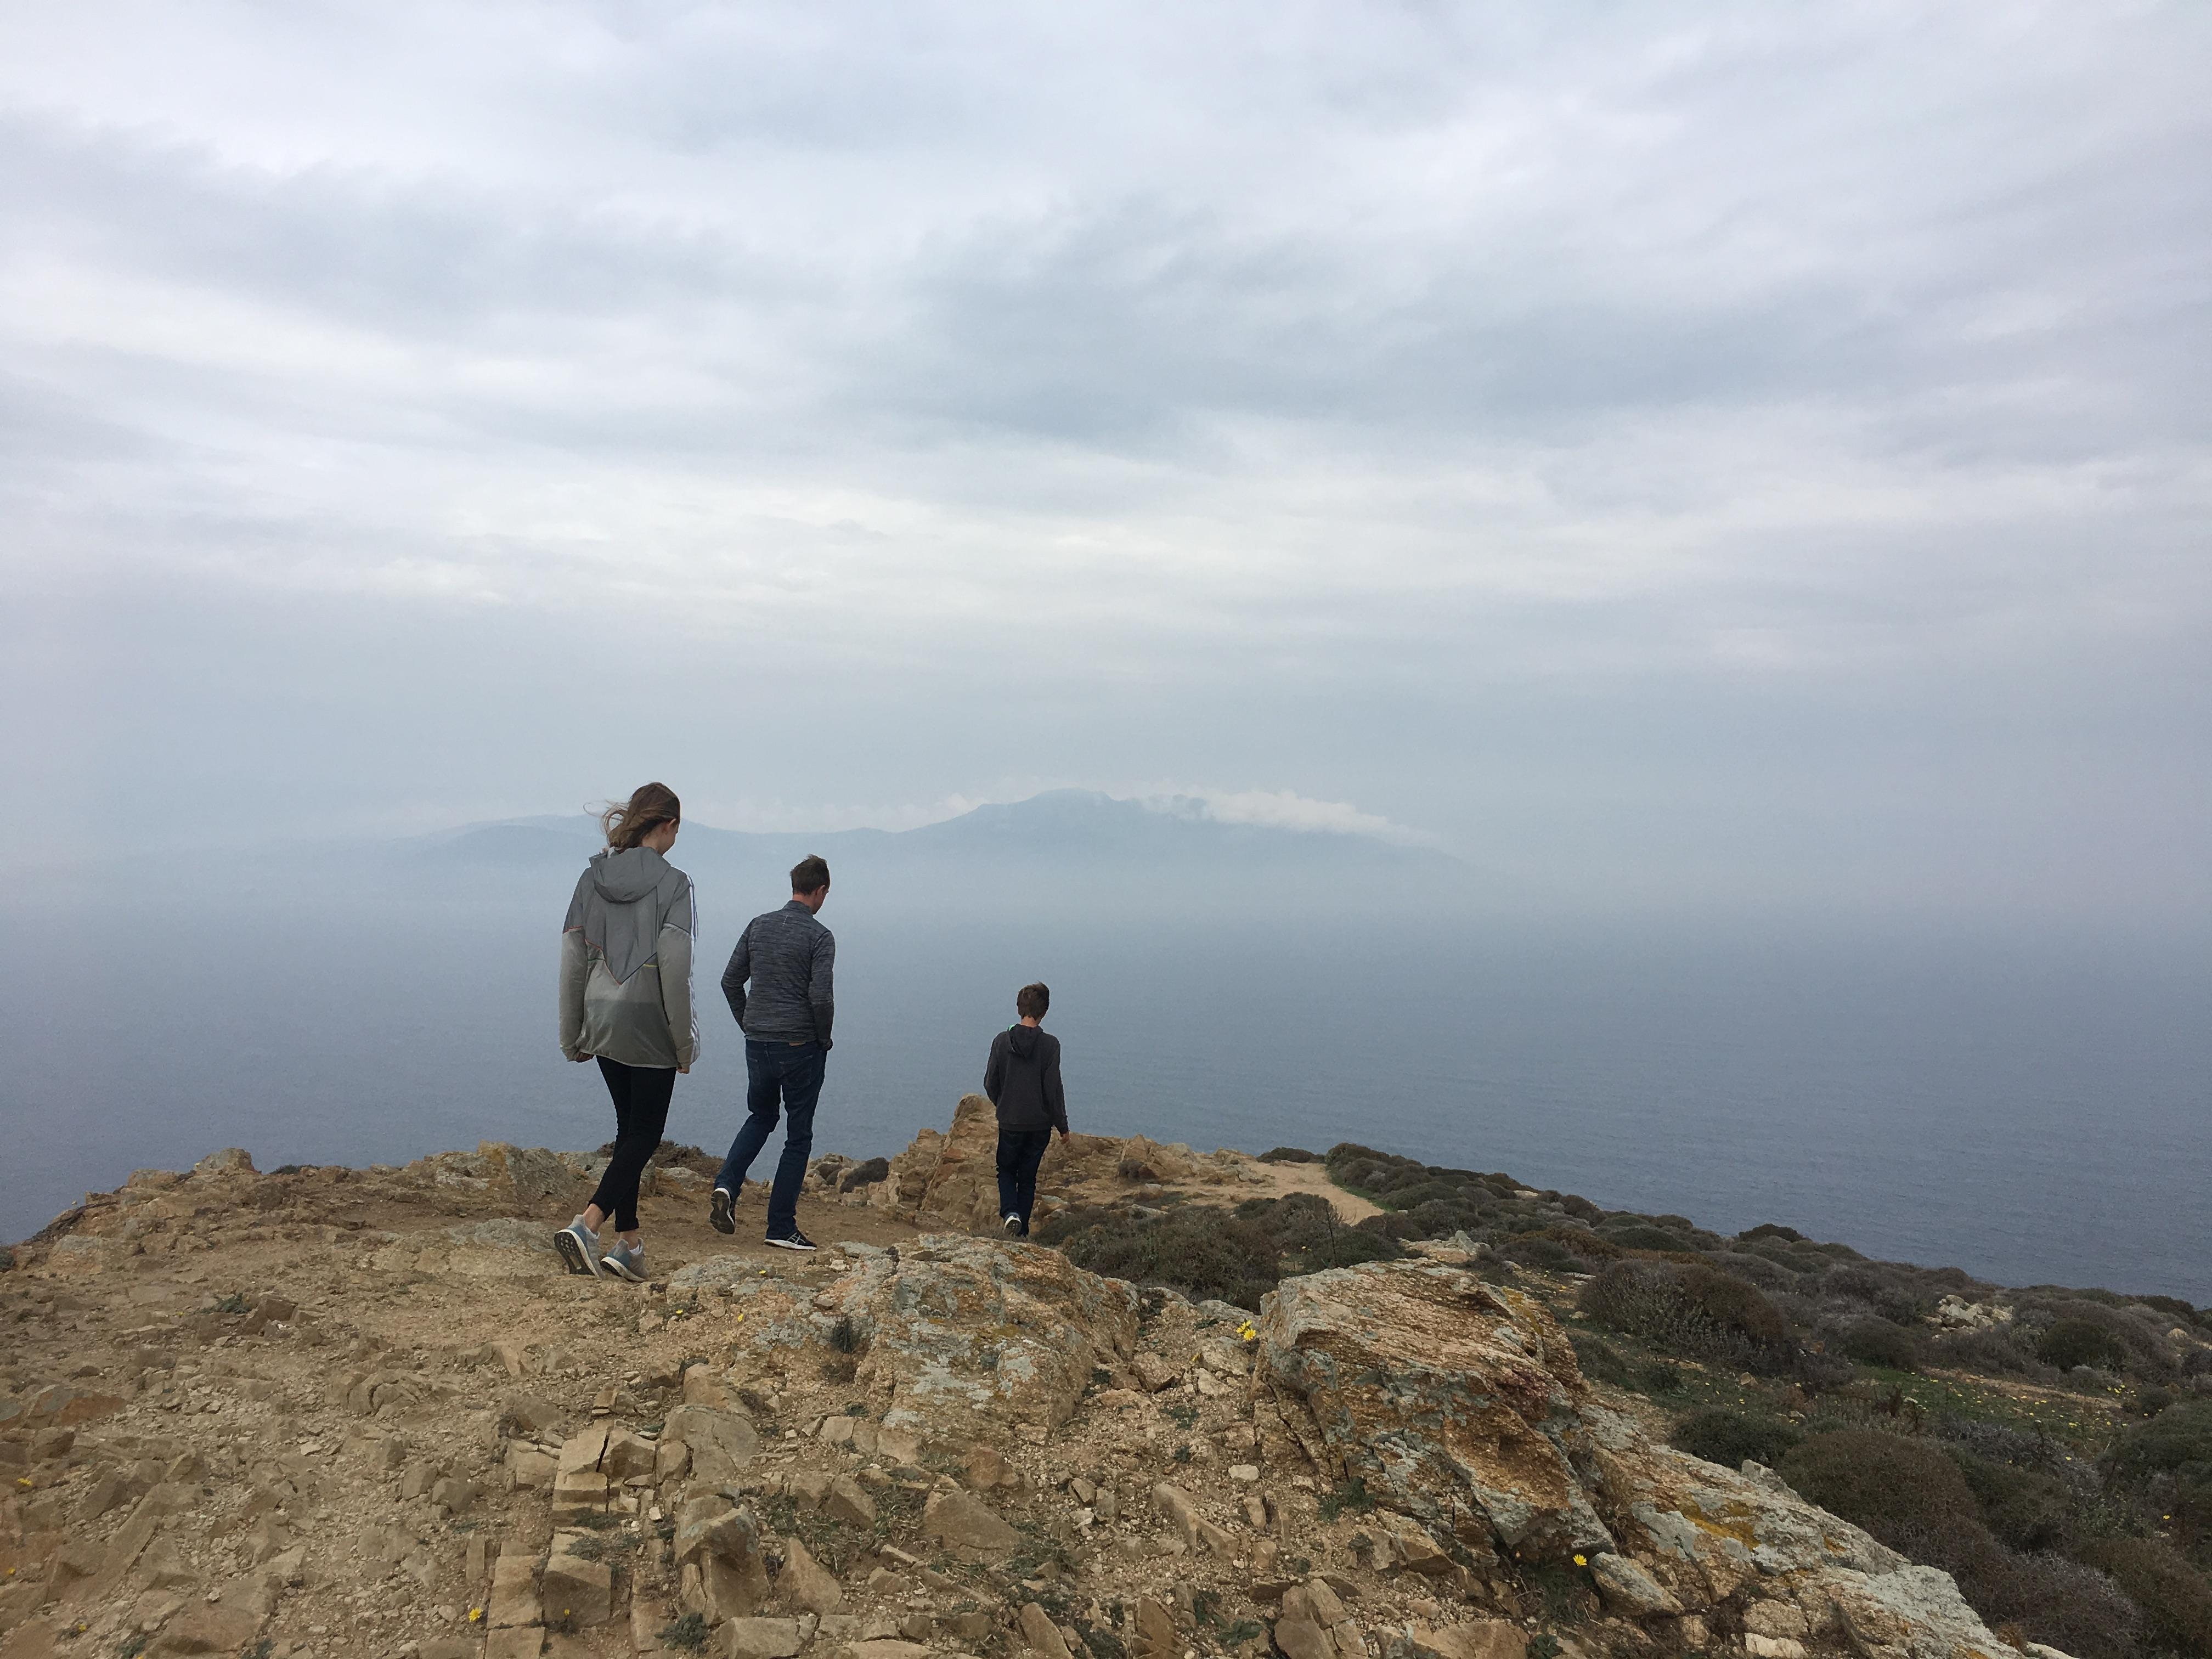 Man erkennt den Berg über das Meer hinweg erst auf den zweiten Blick. Meine Familie auf Mykonos im Oktober.